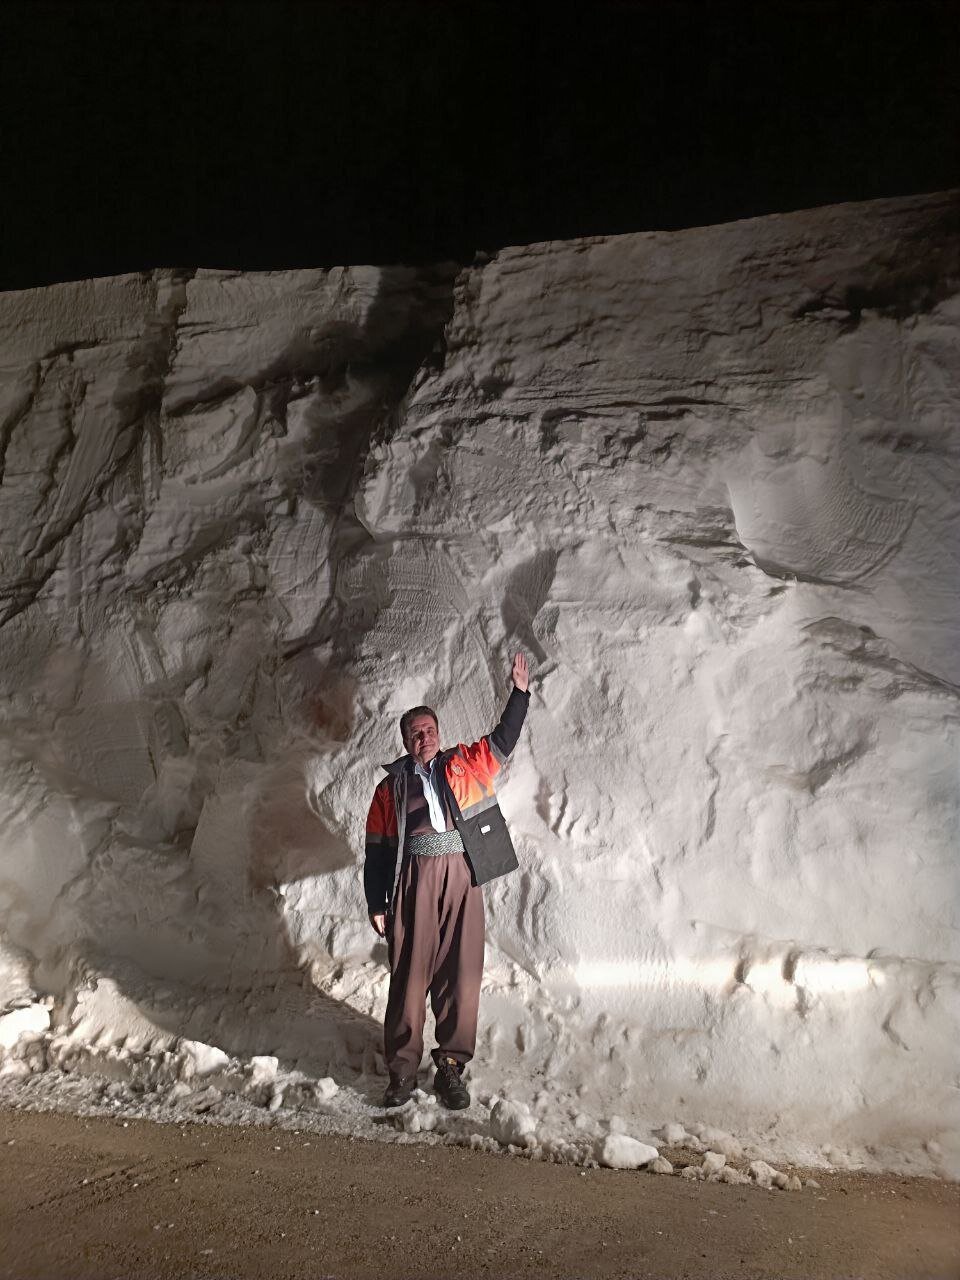 تصویری باورنکردنی از بارش 4متری برف در کردستان